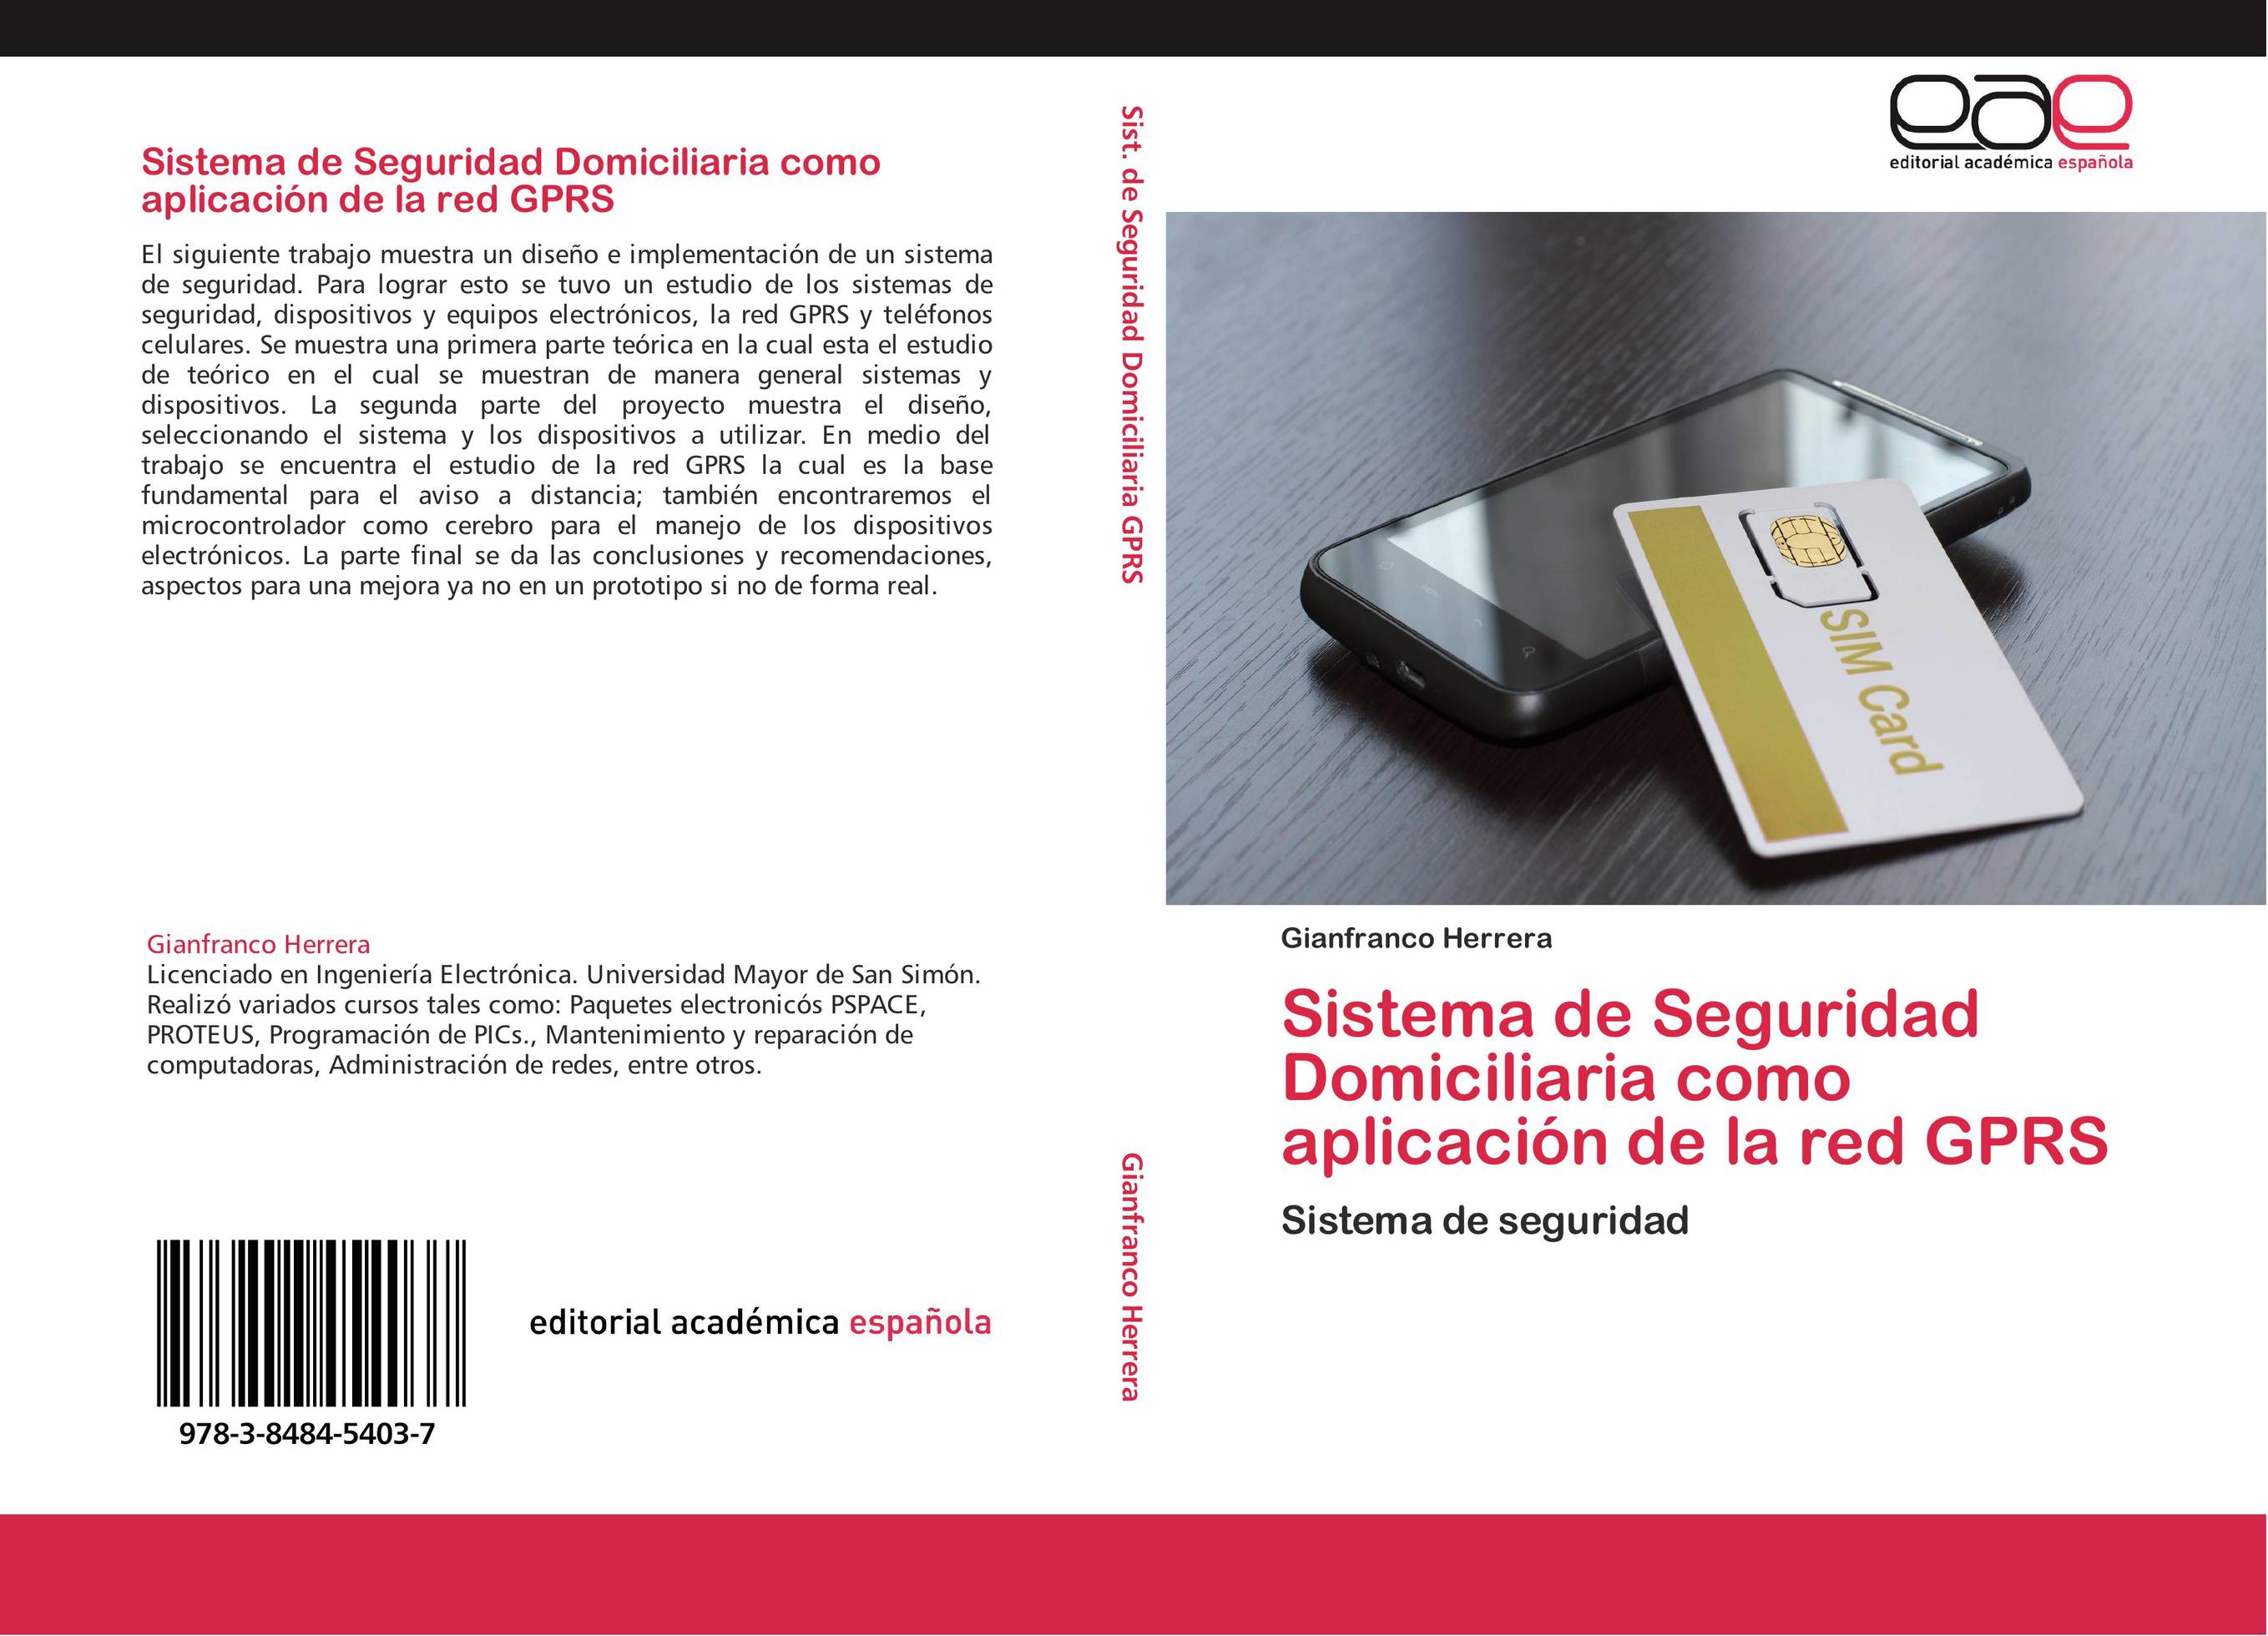 Sistema de Seguridad Domiciliaria como aplicación de la red GPRS